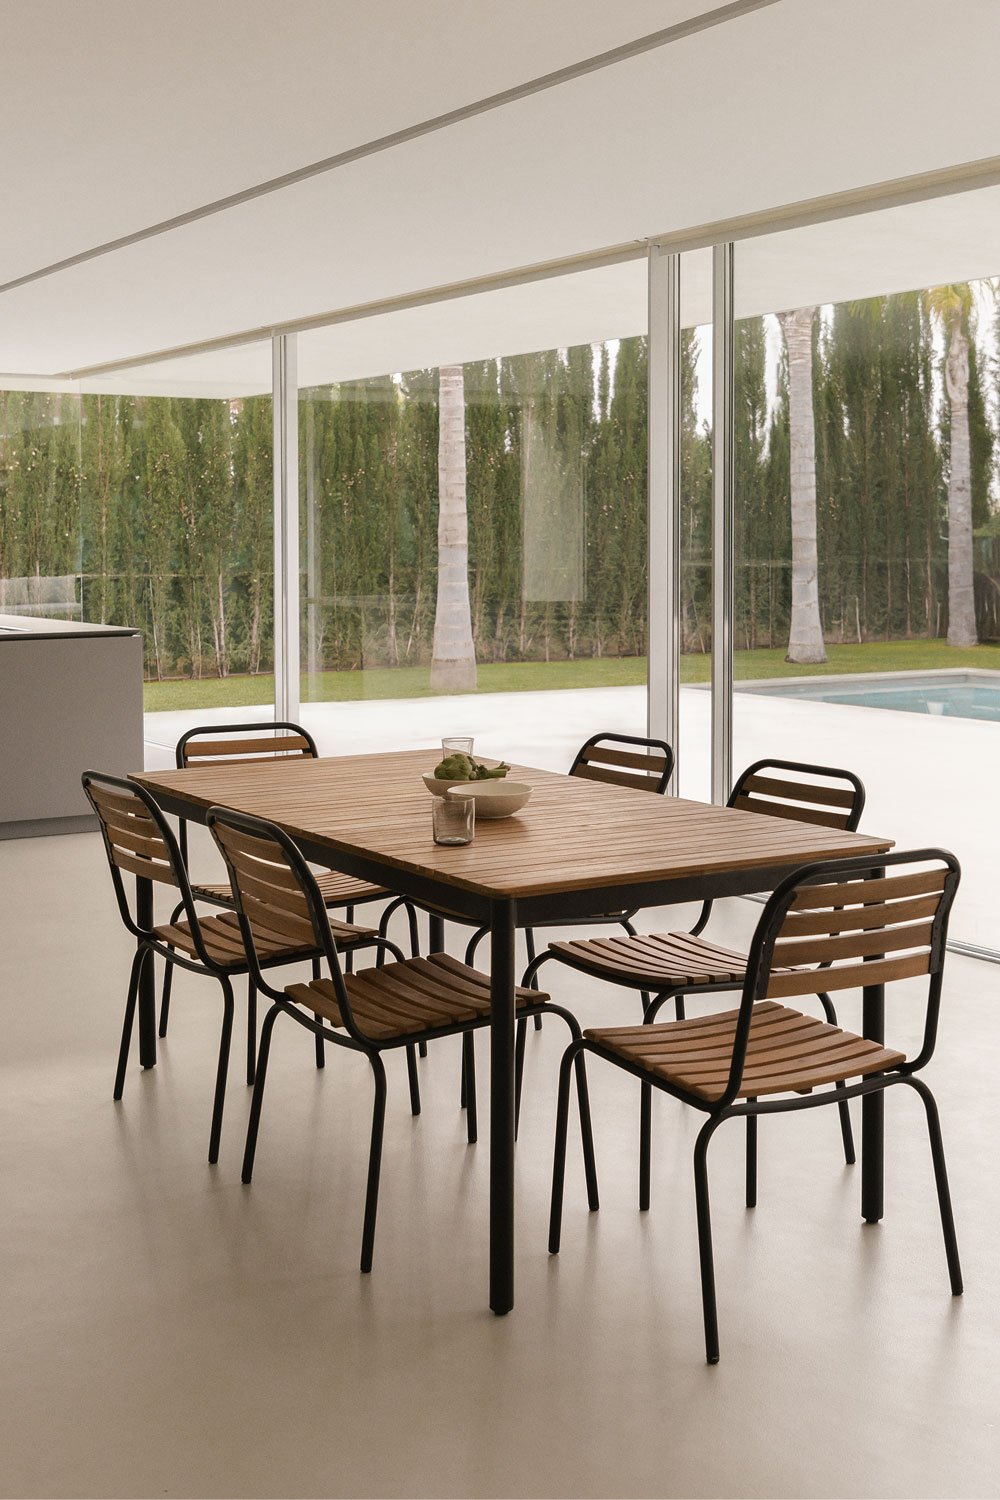 Rechthoekige tafelset (160x90 cm) en 6 stapelbare eetkamerstoelen in staal en acacia-artushout, galerij beeld 1